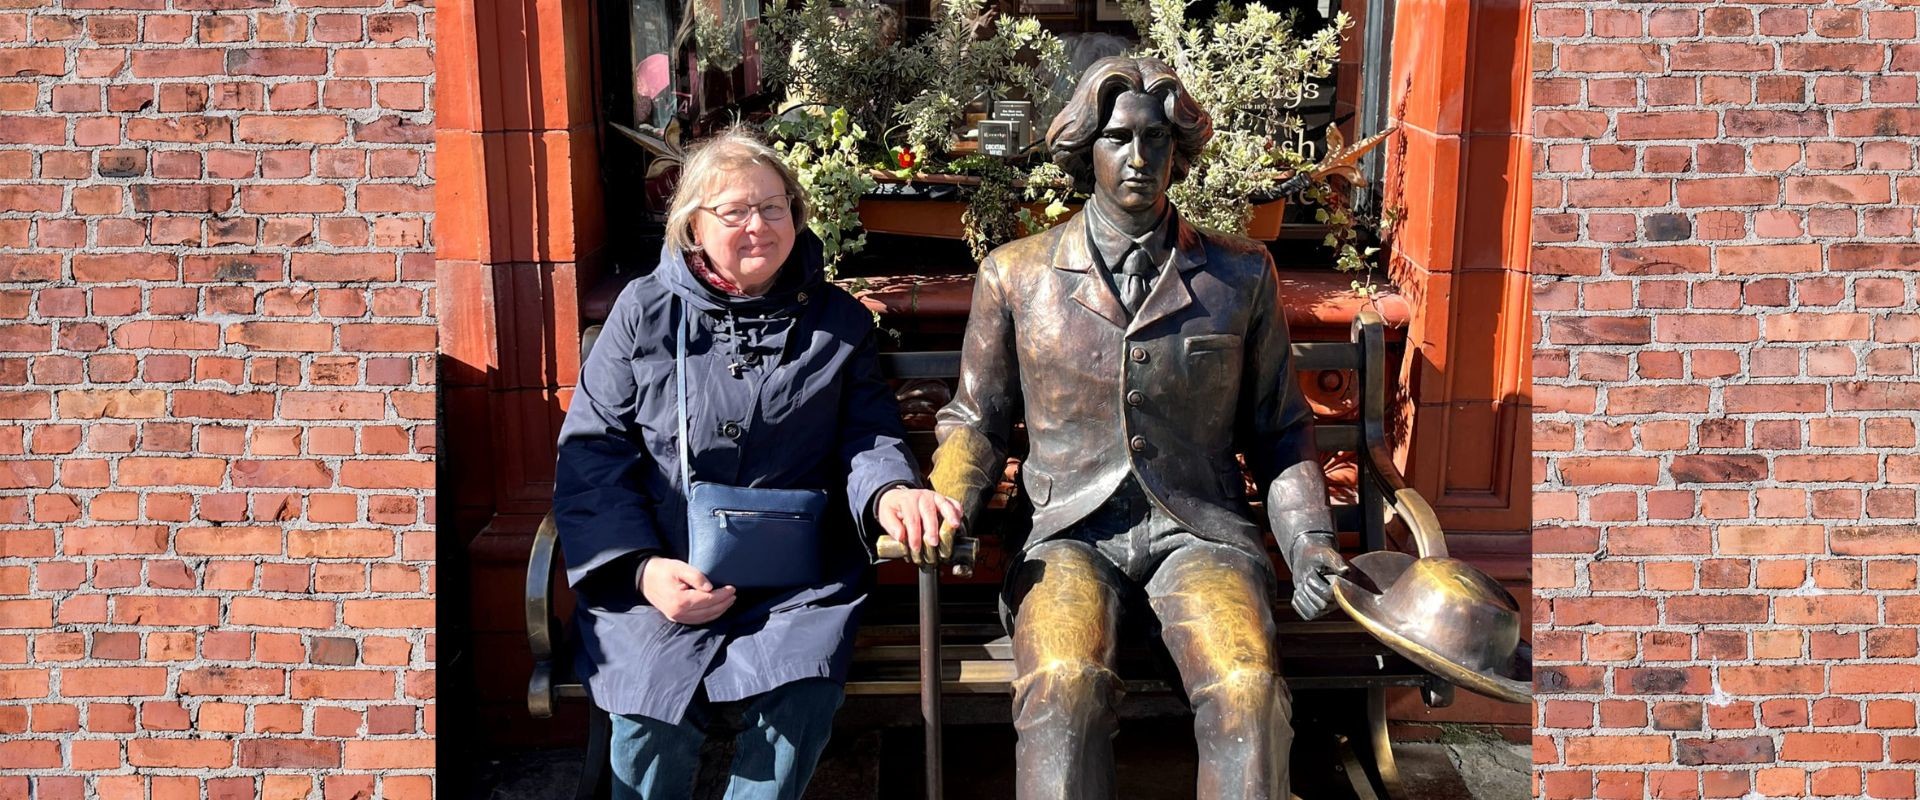 Kirjastotoimenjohtaja Maarit Järveläinen istuu penkillä Oscar Wilde -patsaan vieressä ja hymyilee.